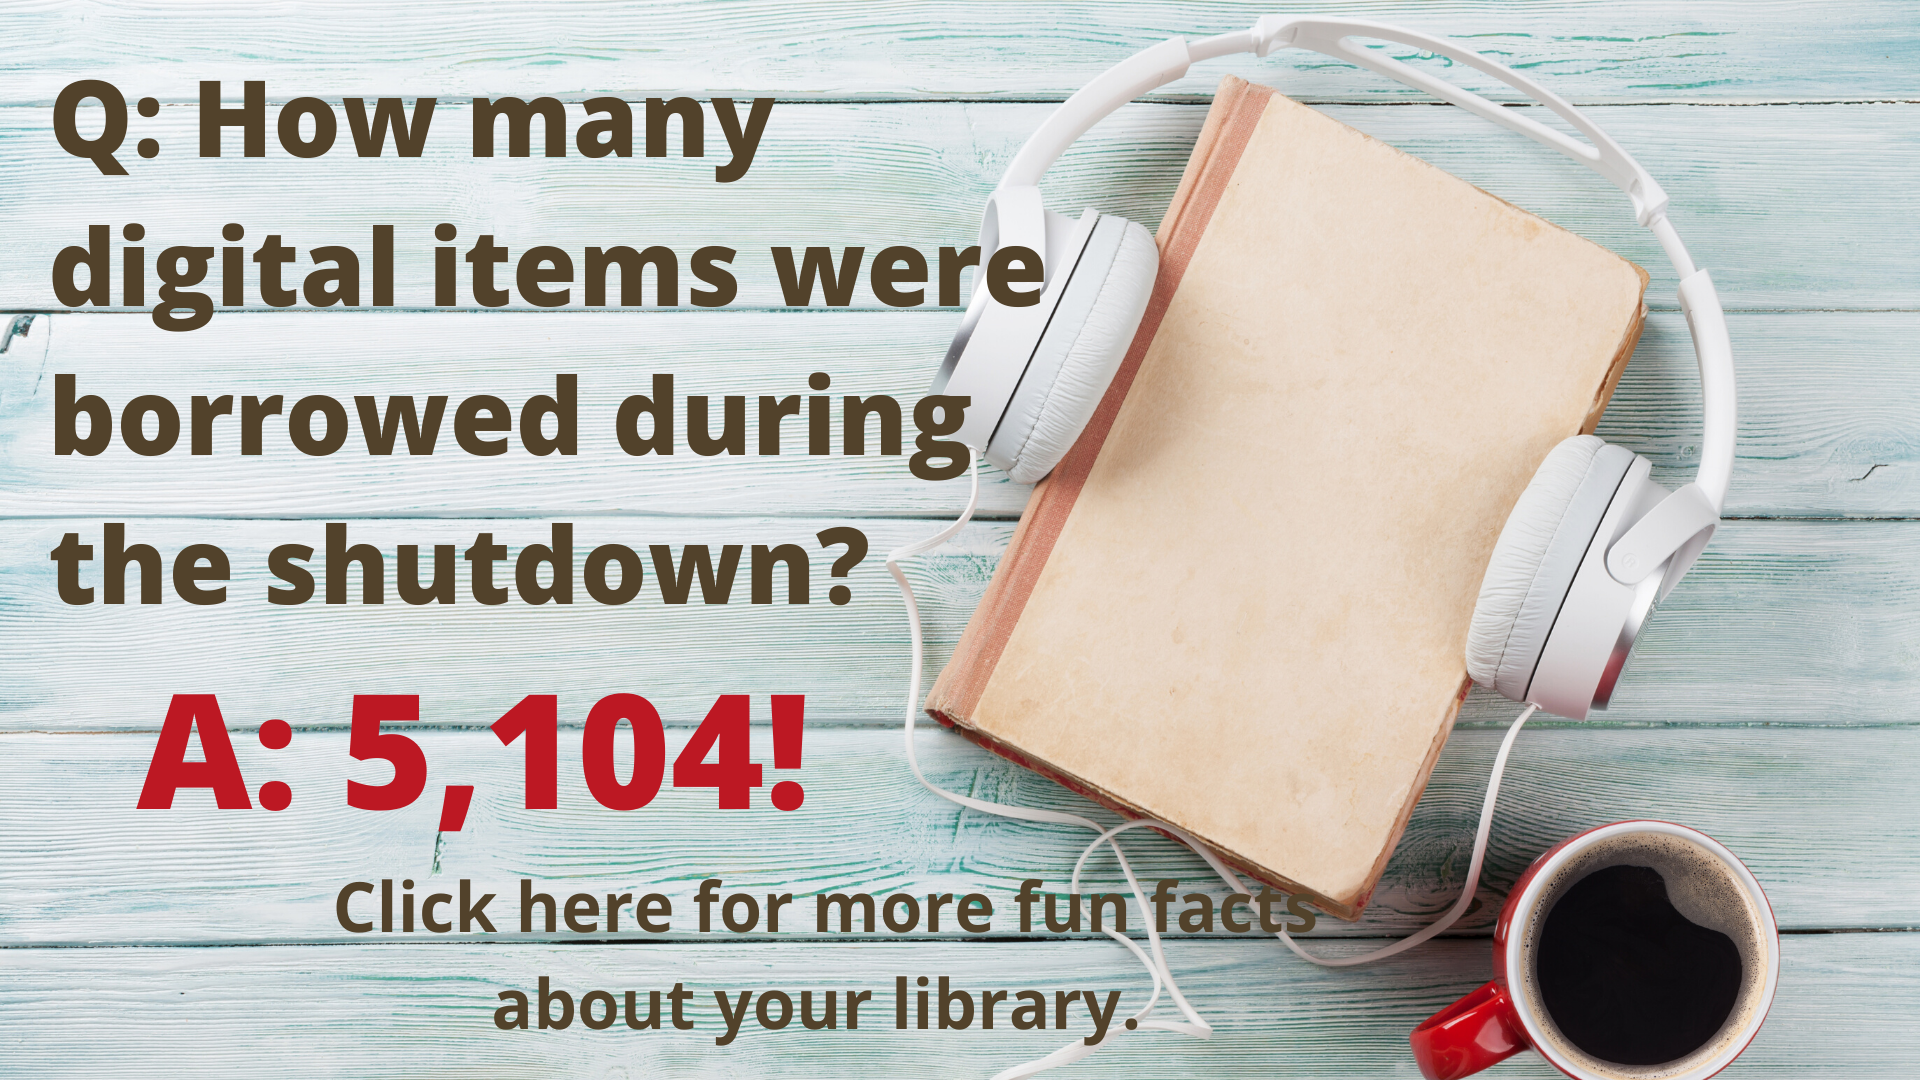 Fun Fact shutdown checkouts